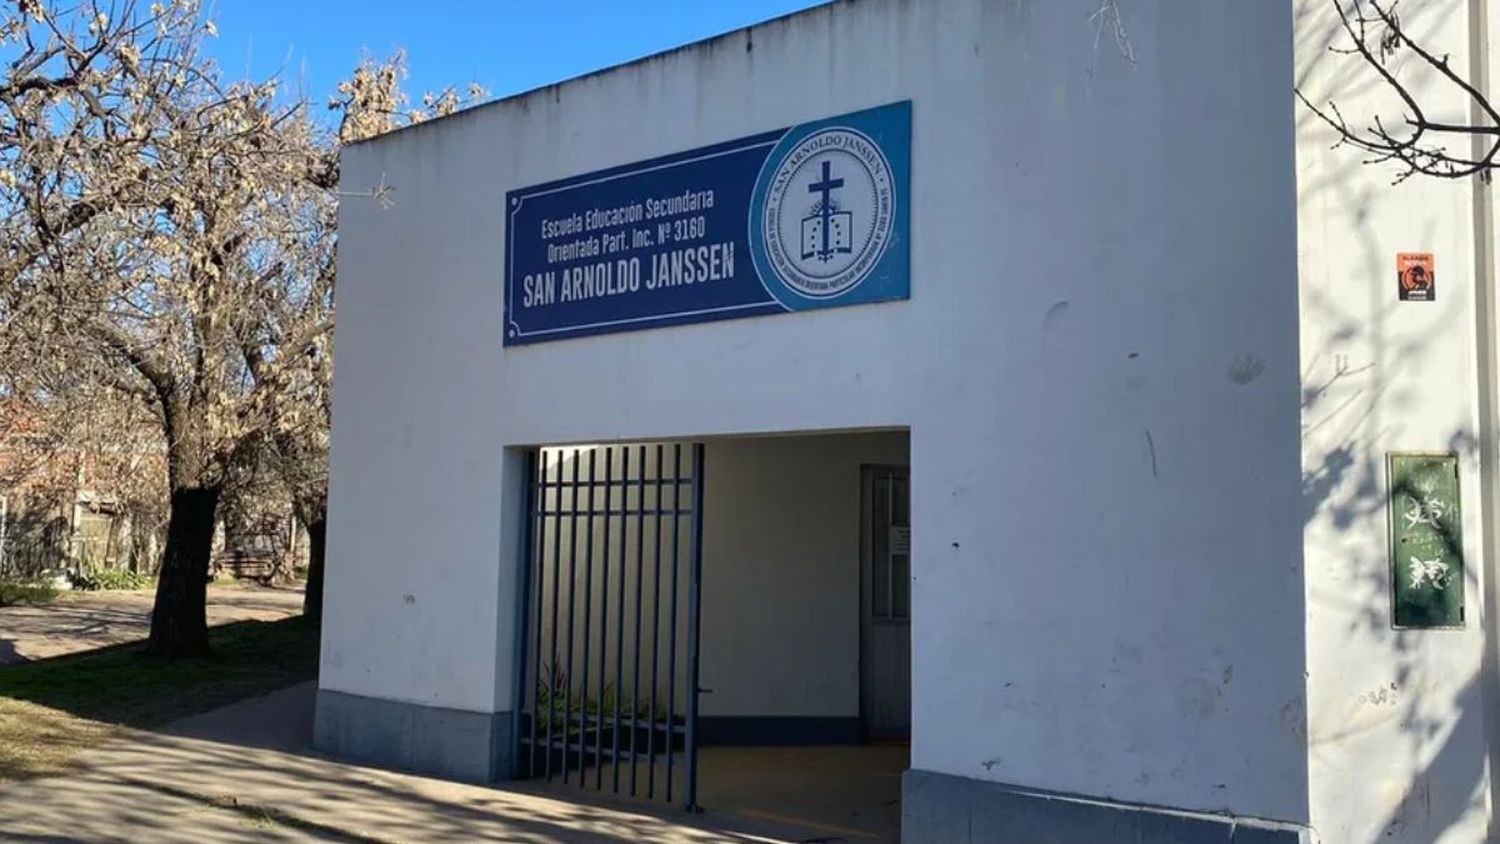 Escuela San Arnoldo Jansen: por una amenaza de tiroteo hubo una fuerte custodia policial